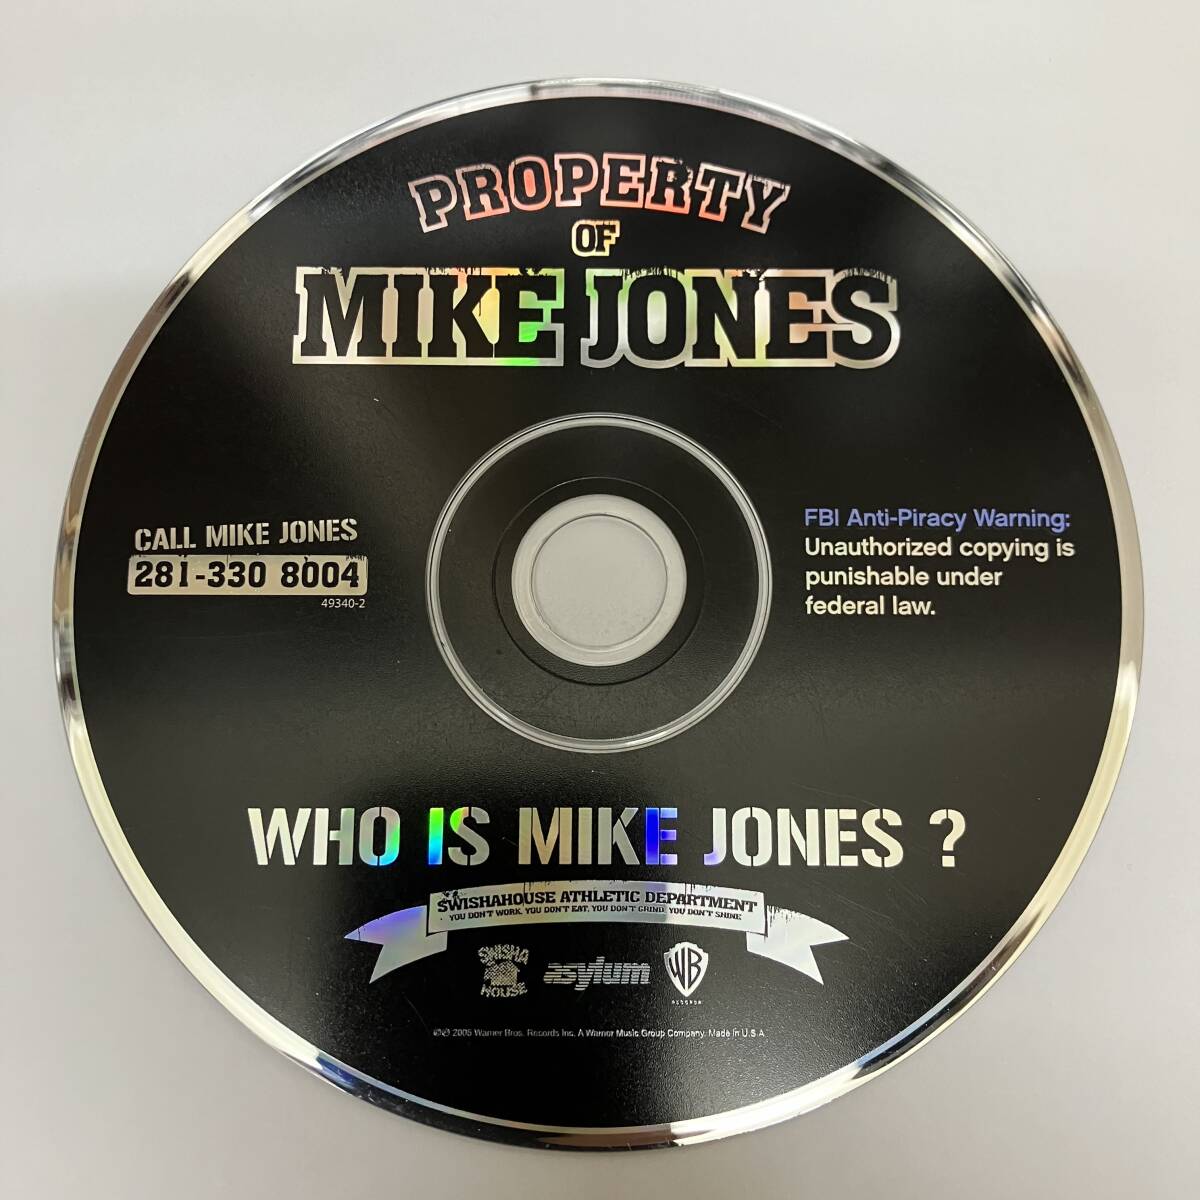 裸40 HIPHOP,R&B PROPERTY OF MIKE JONES - WHO IS MIKE JONES? アルバム CD 中古品_画像1